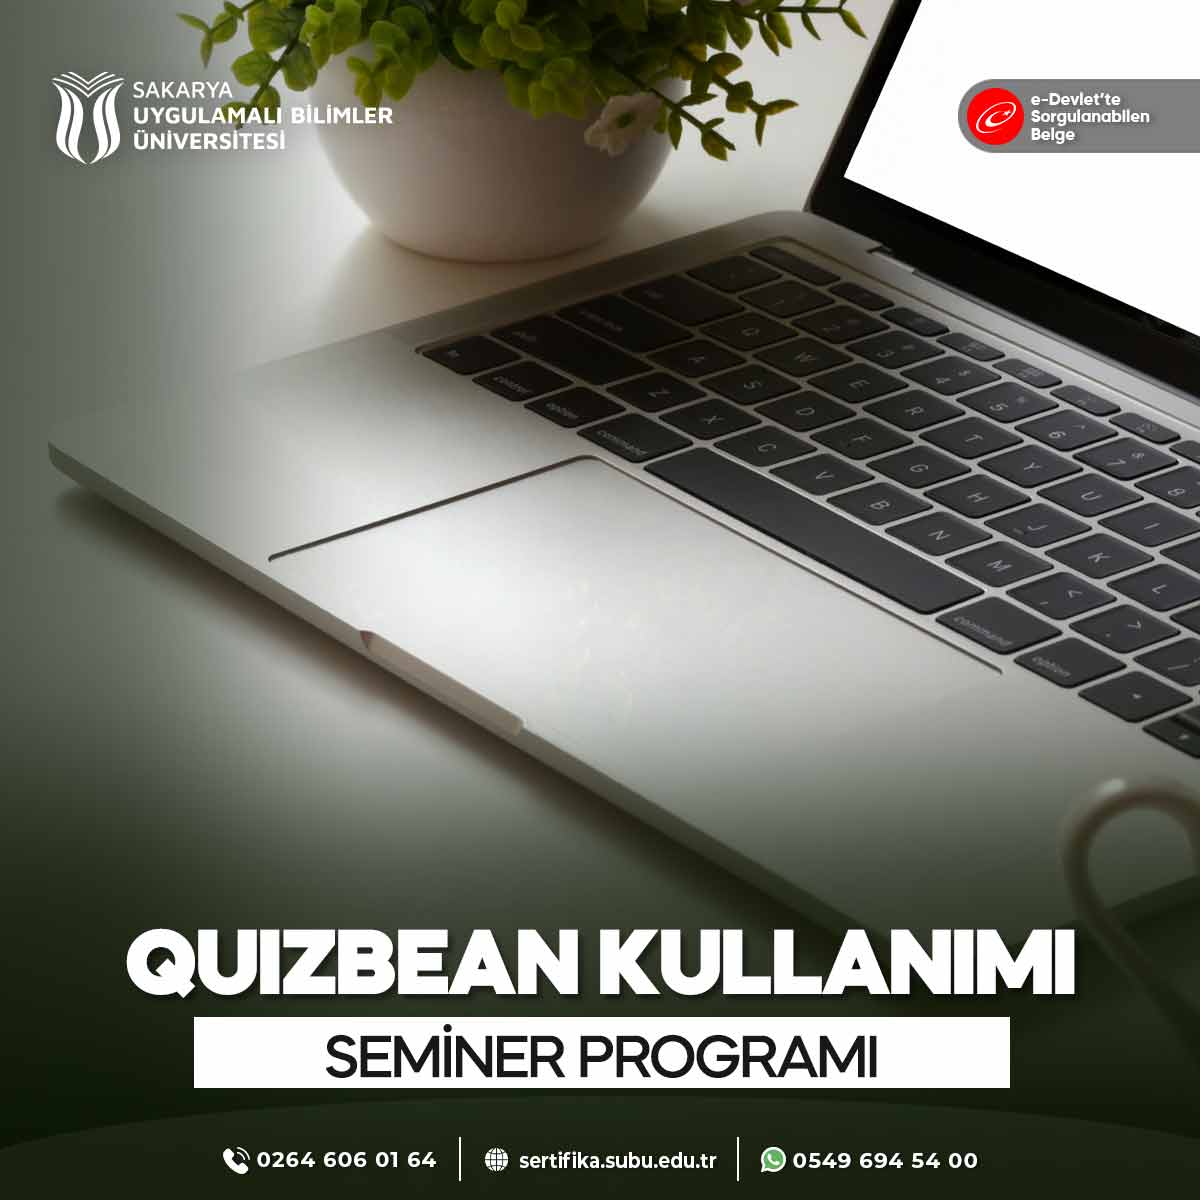 Quizbean Kullanımı Semineri